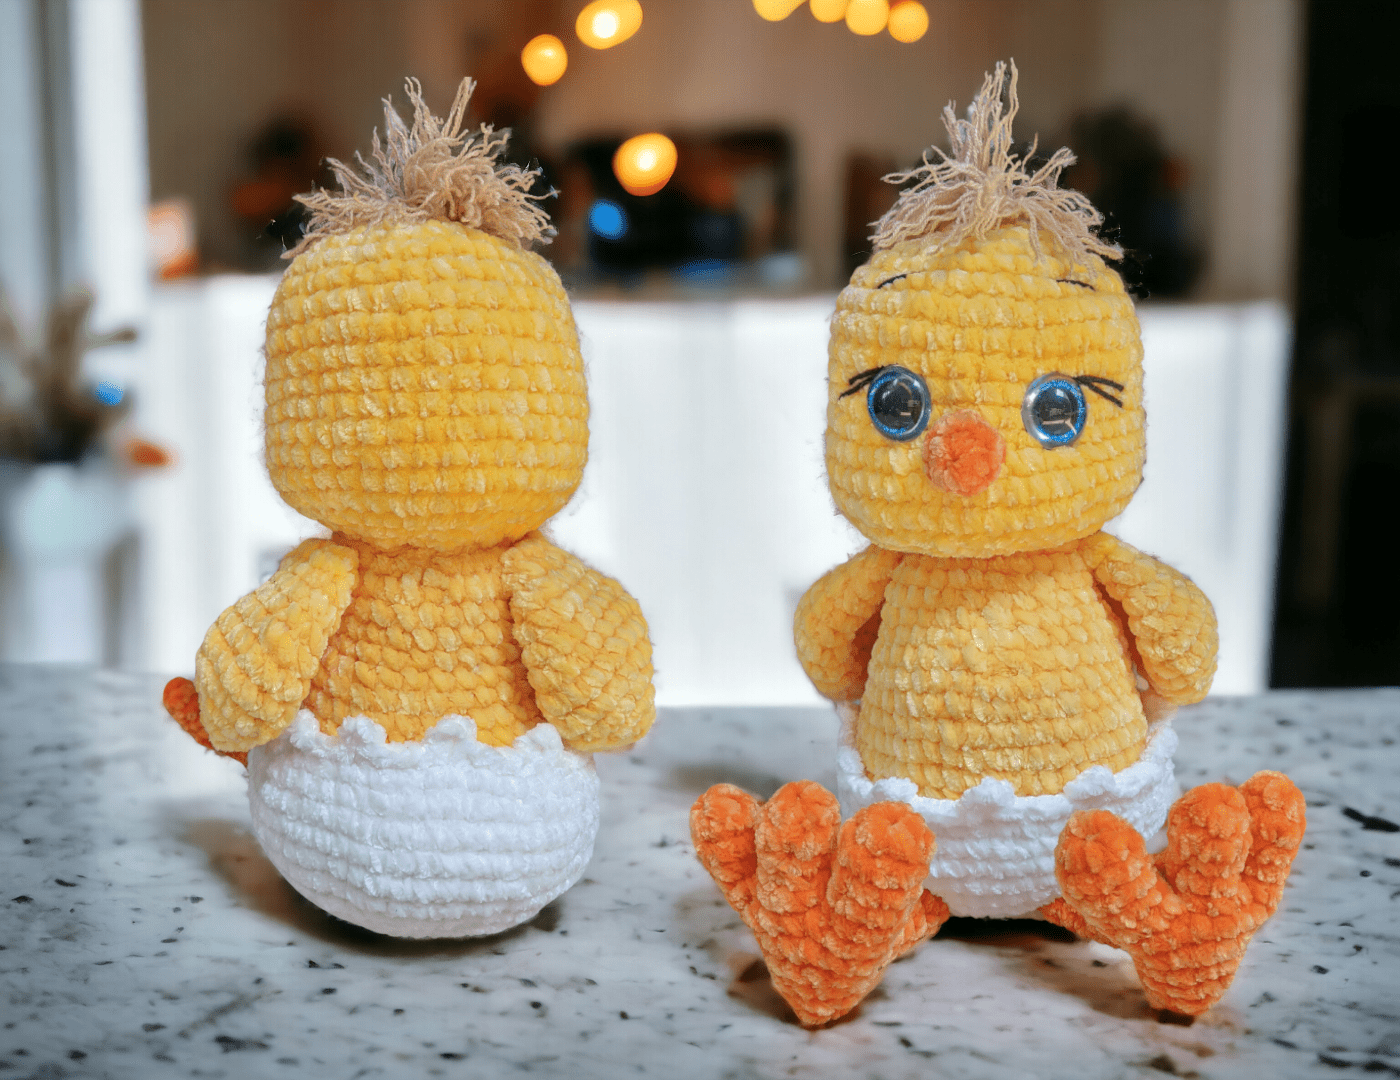 Chicky™ the plush Crochet Pattern